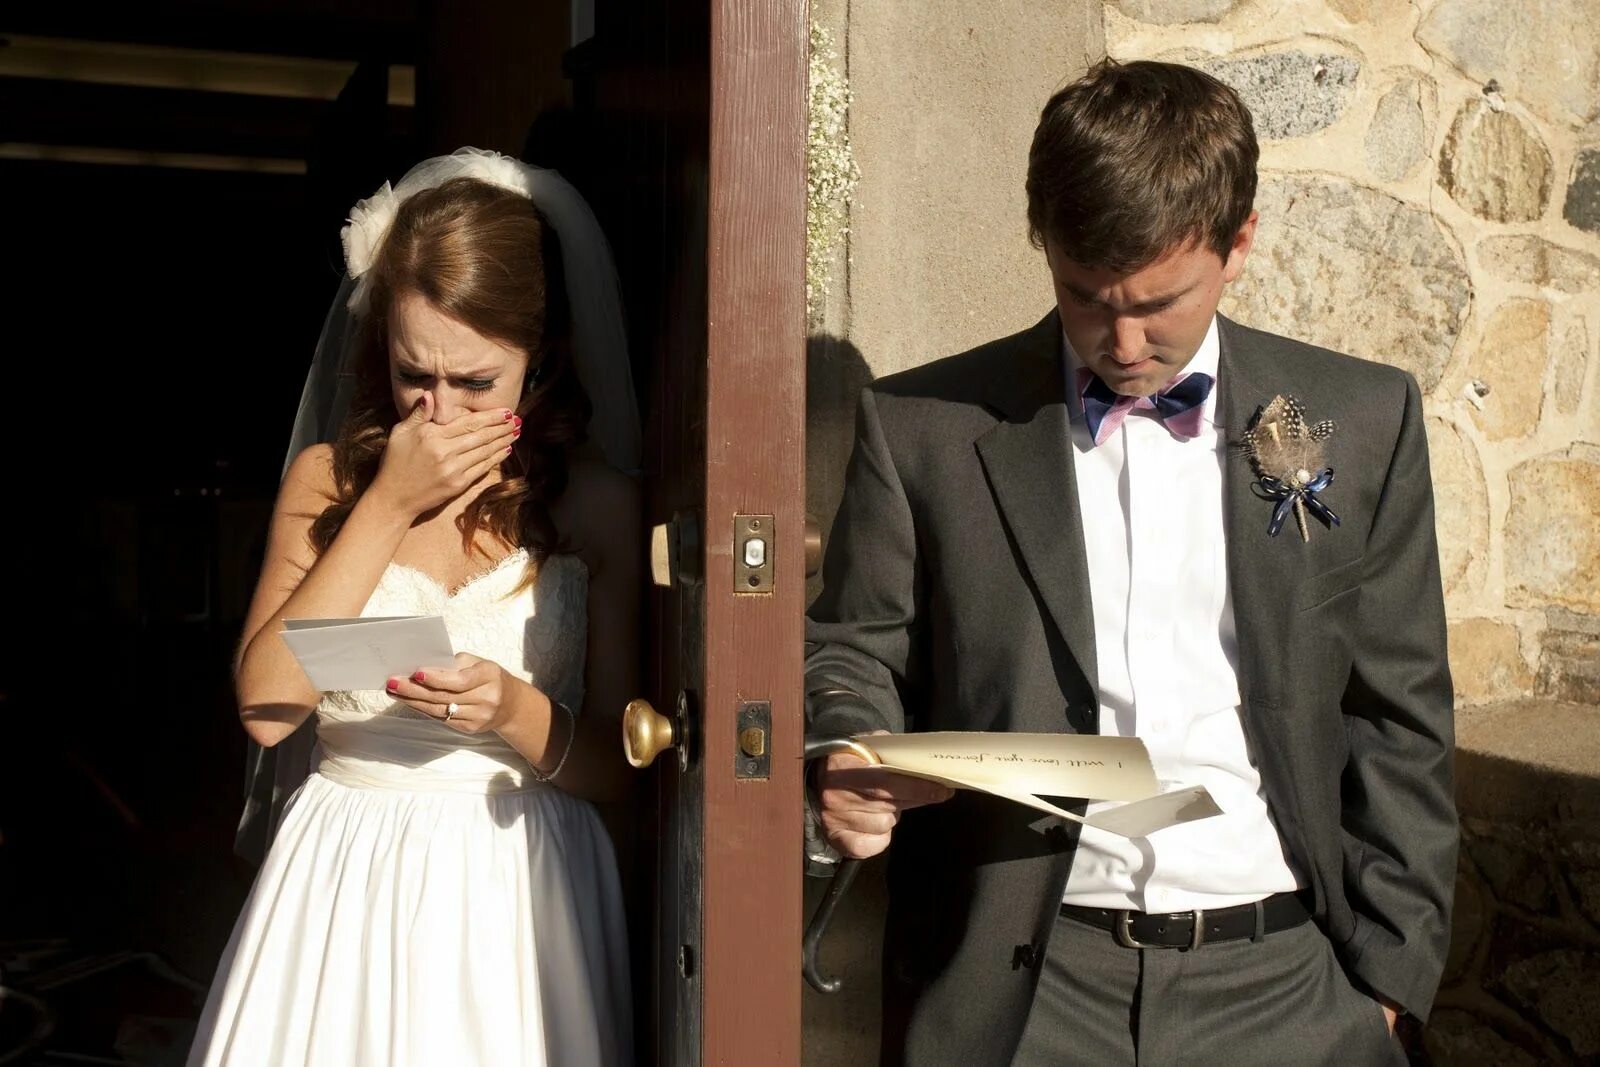 Мужчина и женщина свадьба. Невеста изменяет жениху на свадьбе. Парень перед свадьбой. Фотосессия перед свадьбой жених и невеста. И пришла невеста и пришел жених